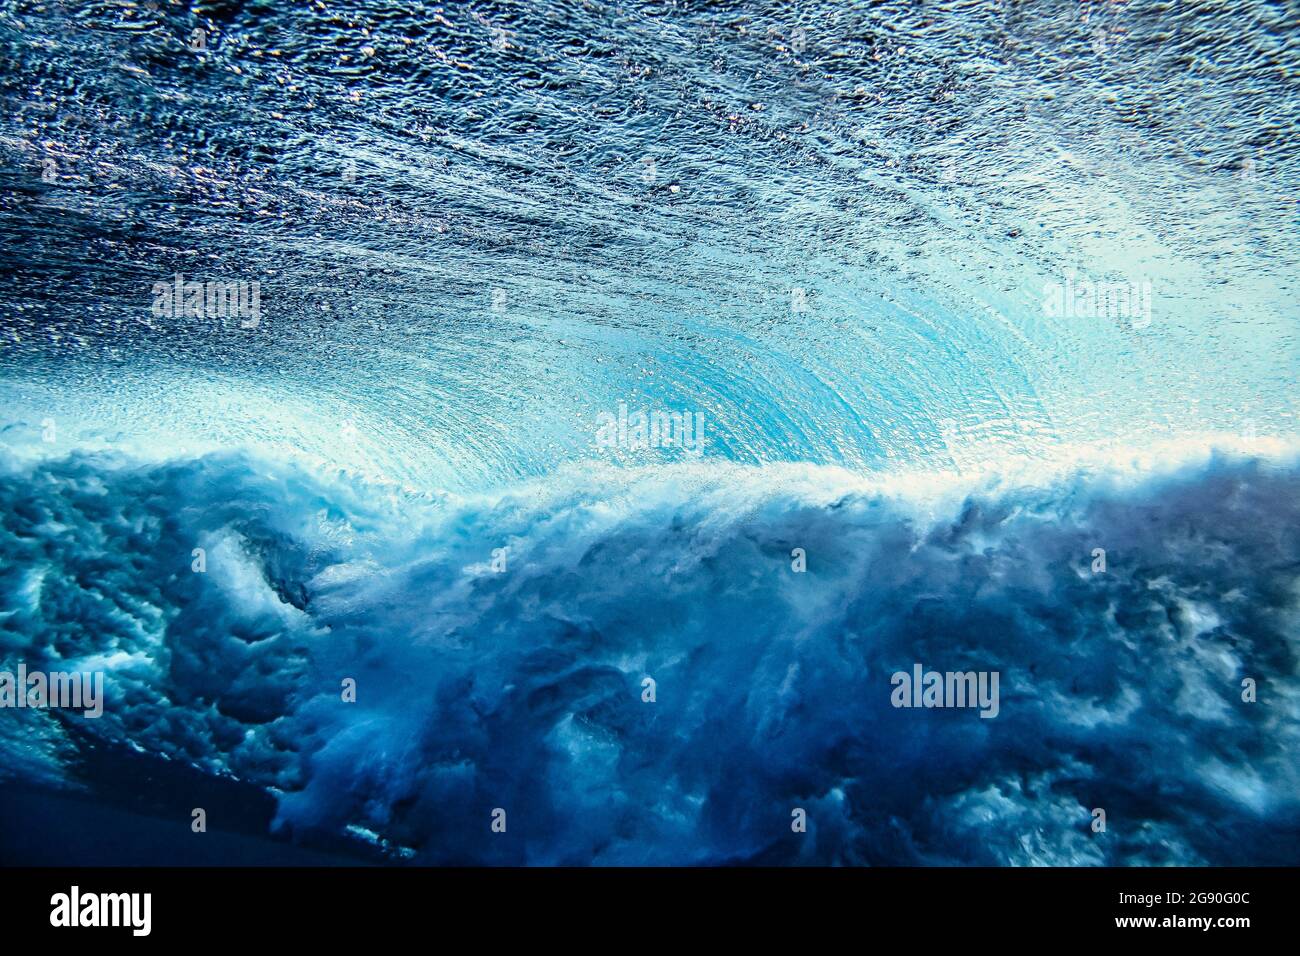 Underwater view of ocean wave Stock Photo